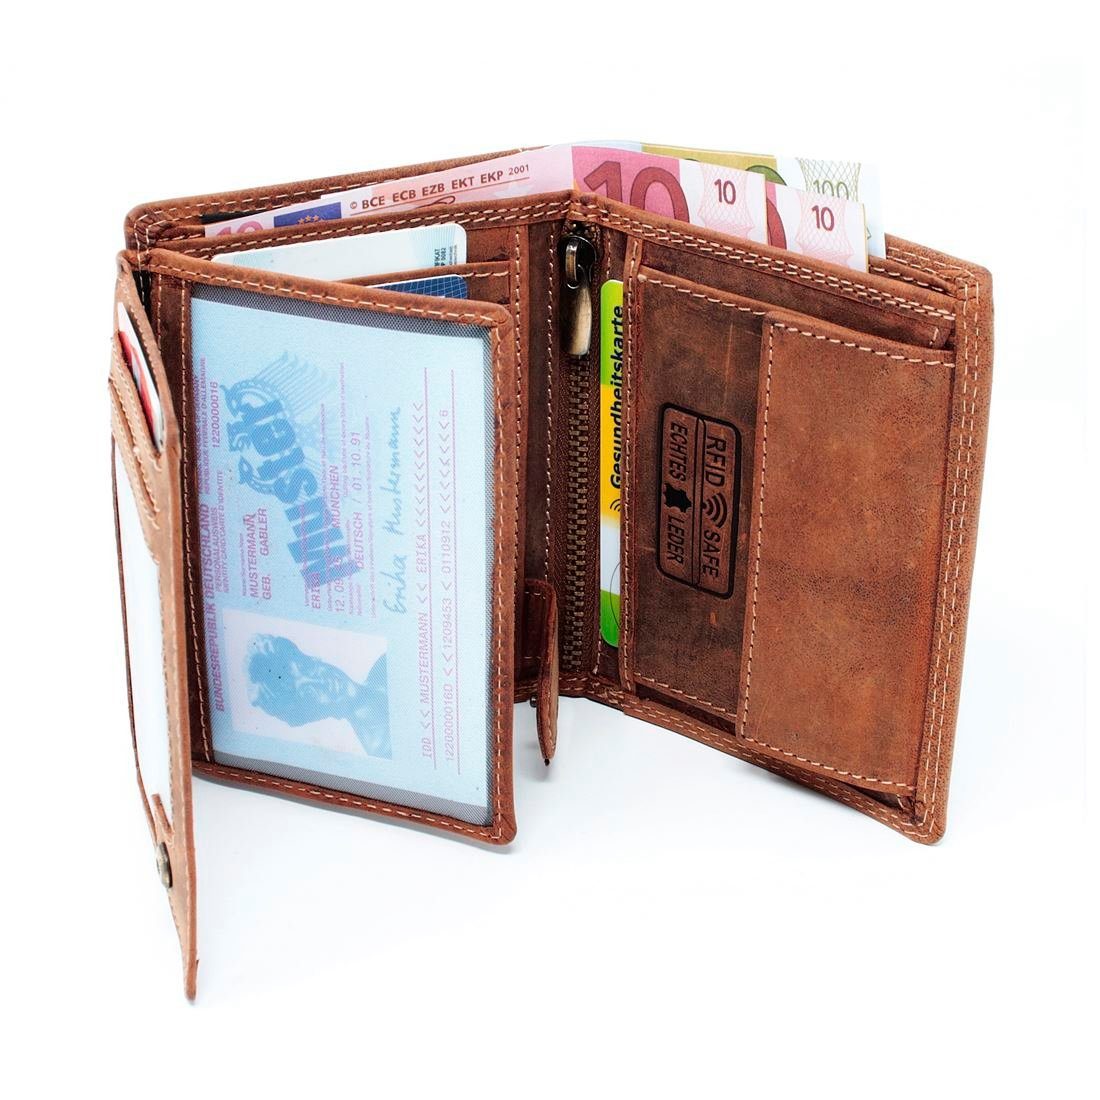 Portemonnaie Lederbörse Geldbörse Geldbeutel Leder Herren Münzfach Männerbörse mit Brieftasche Geldbörse Börse, Schutz RFID SHG